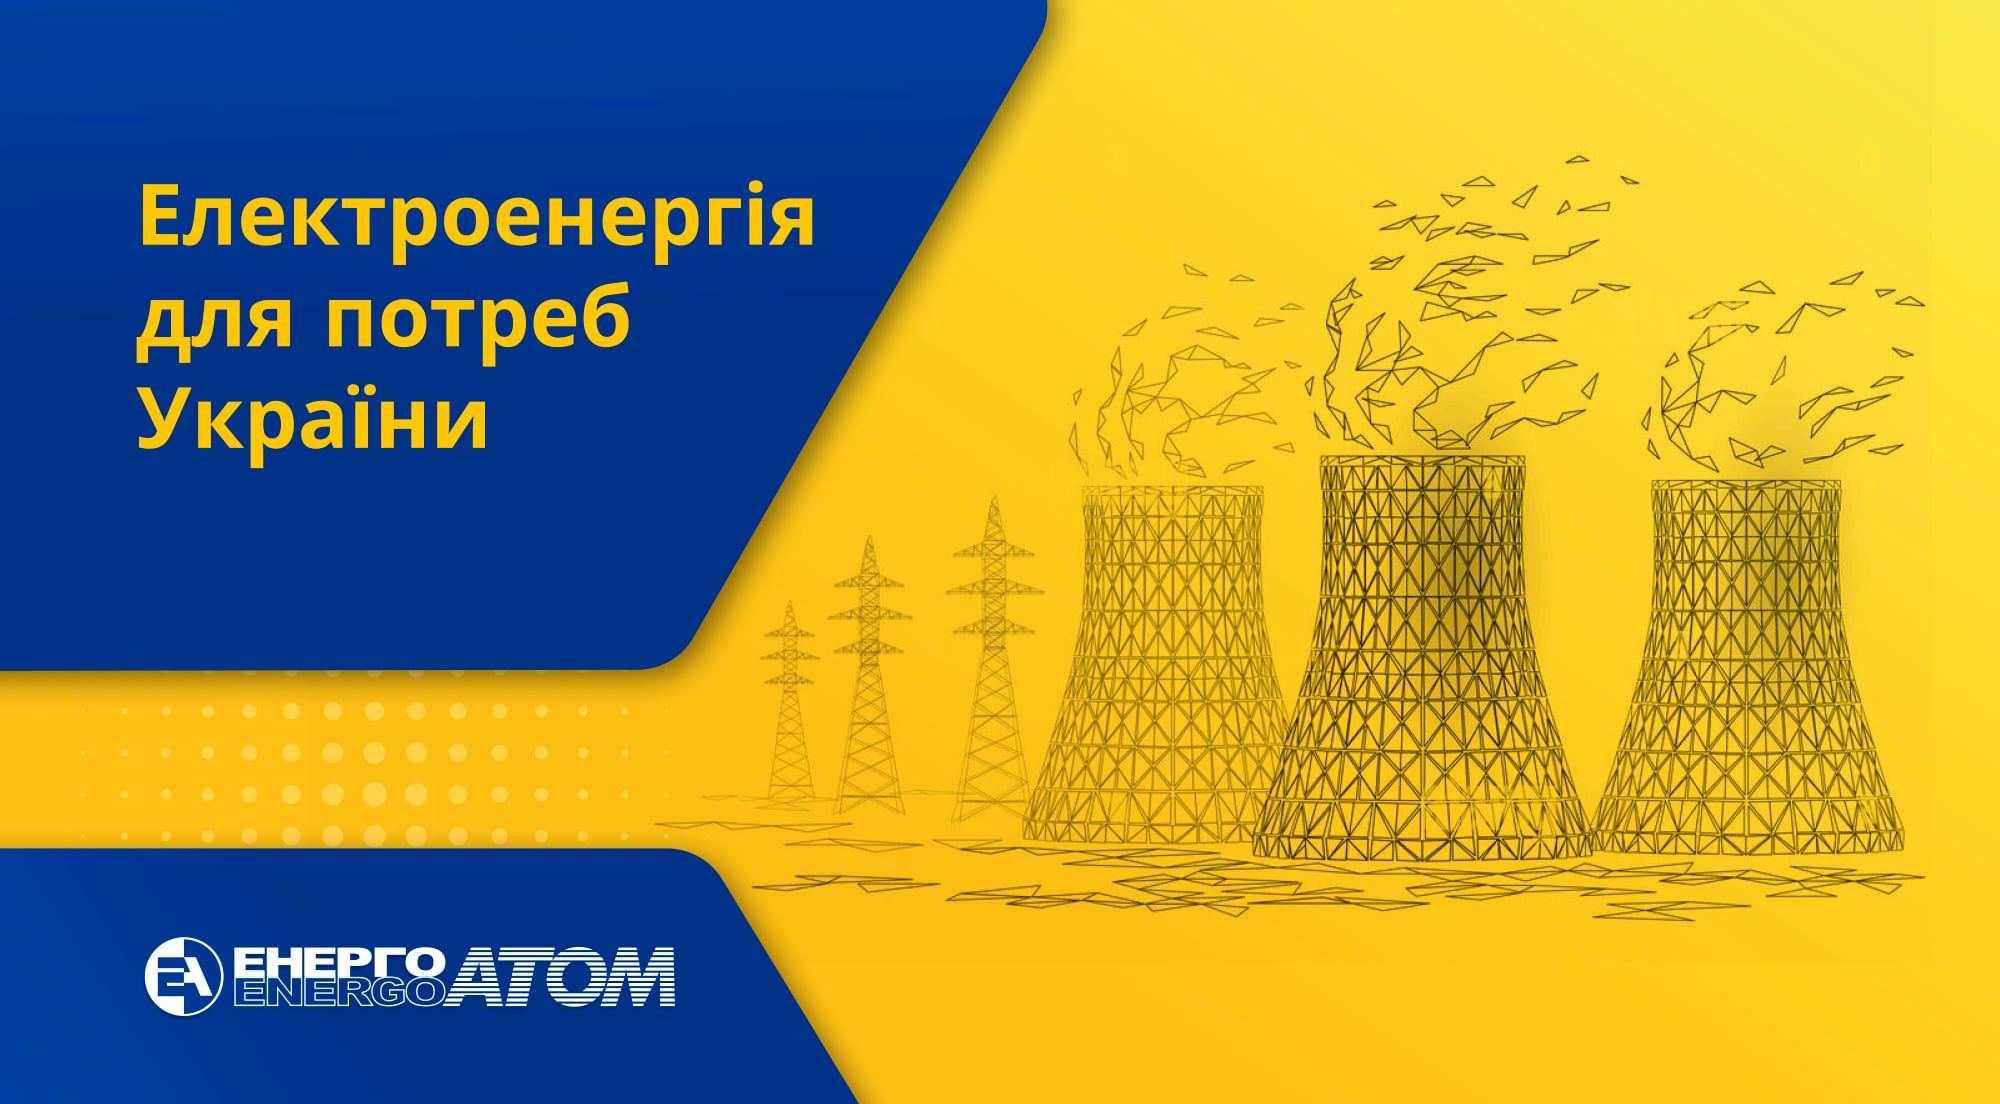 Всі чотири діючі українські АЕС працюють, радіаційний стан у межах норми, - “Енергоатом”